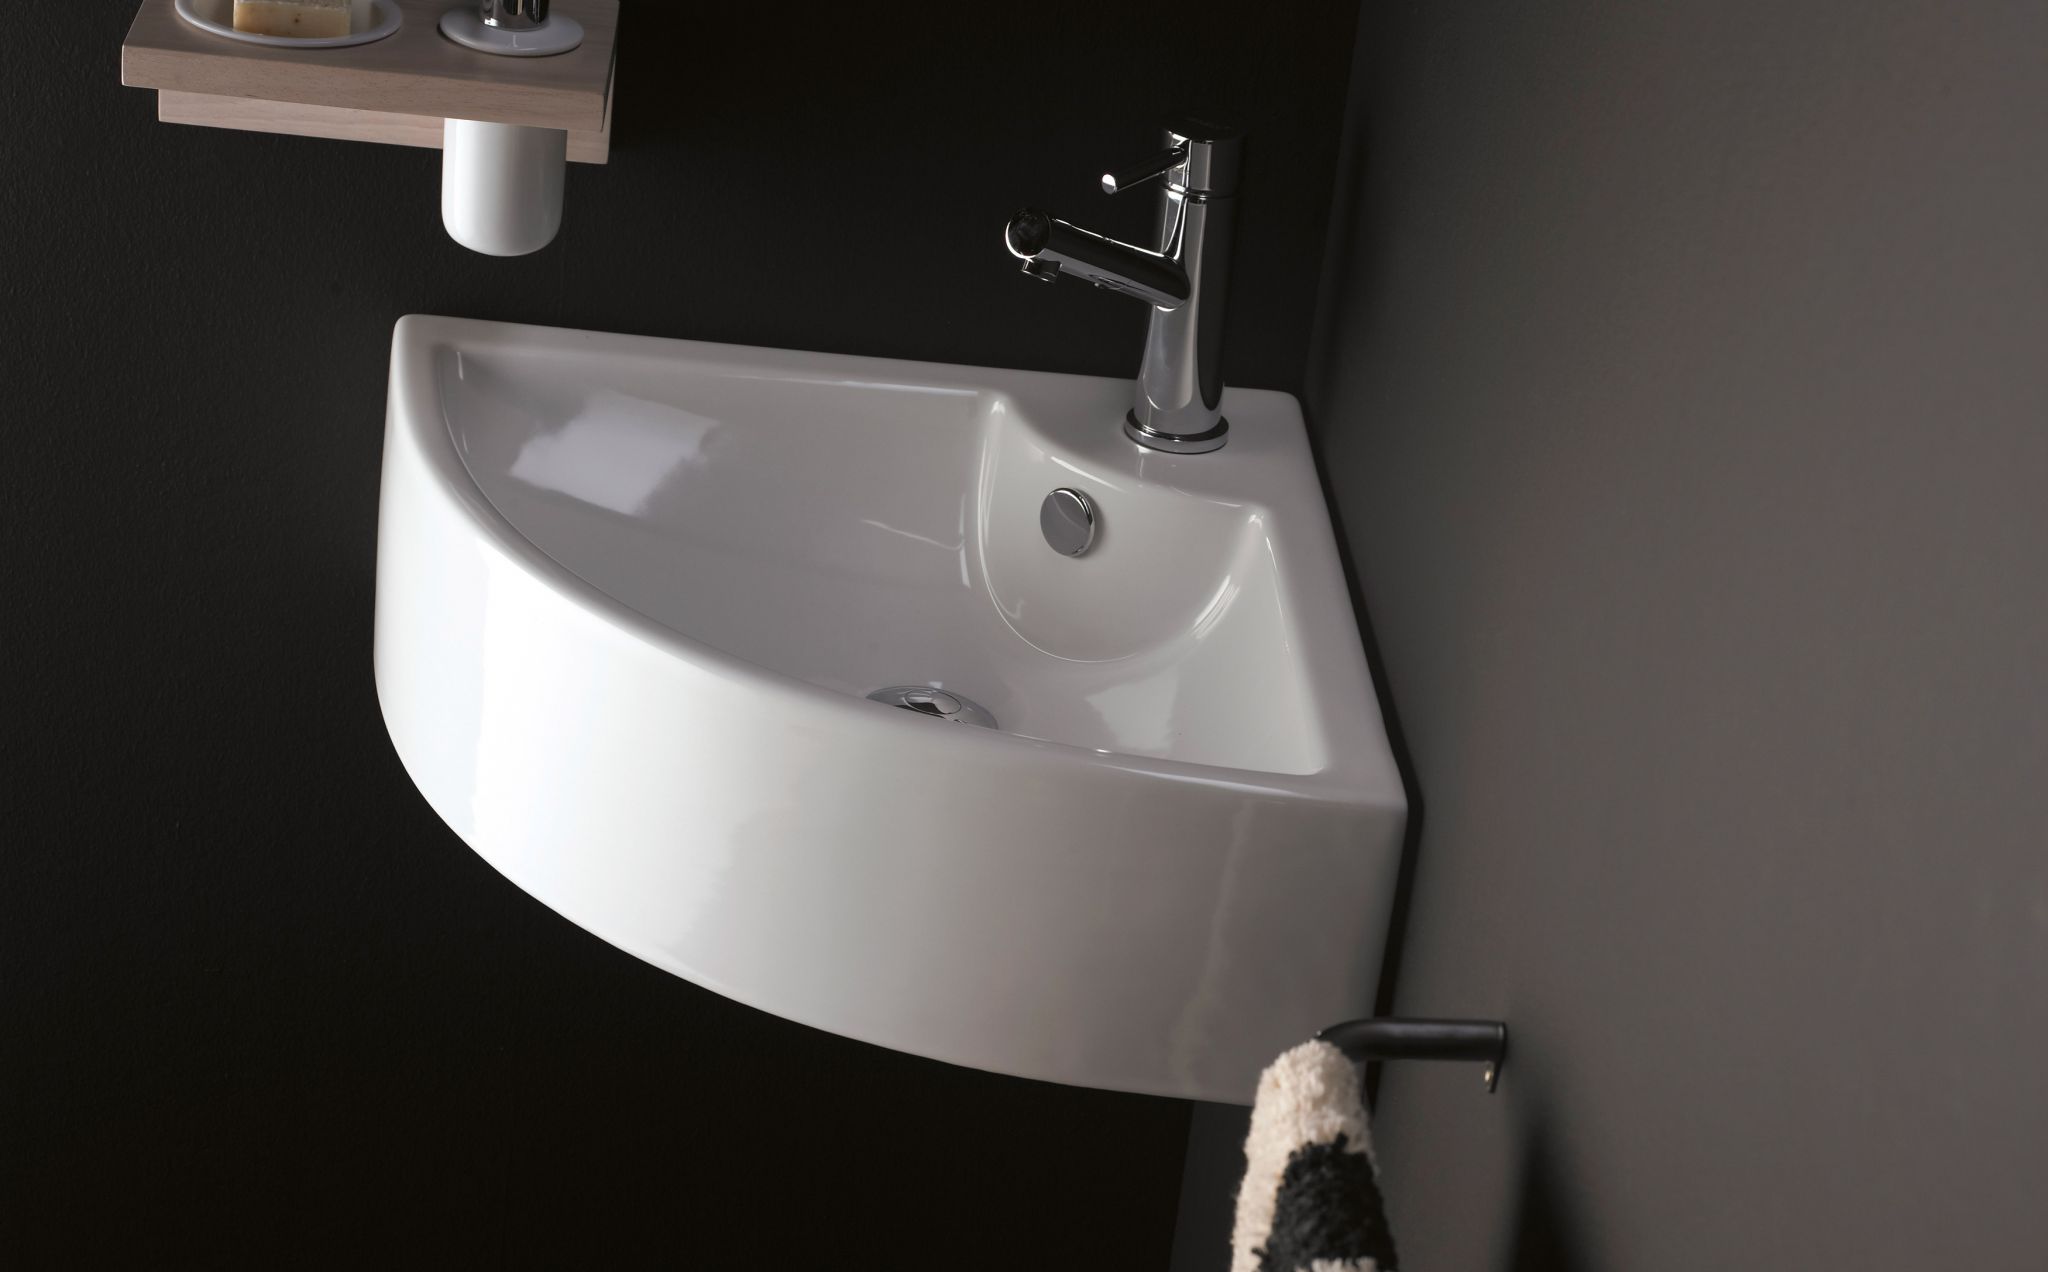 Un lavabo esquinero es ideal para cuartos de baño con espacio reducido.